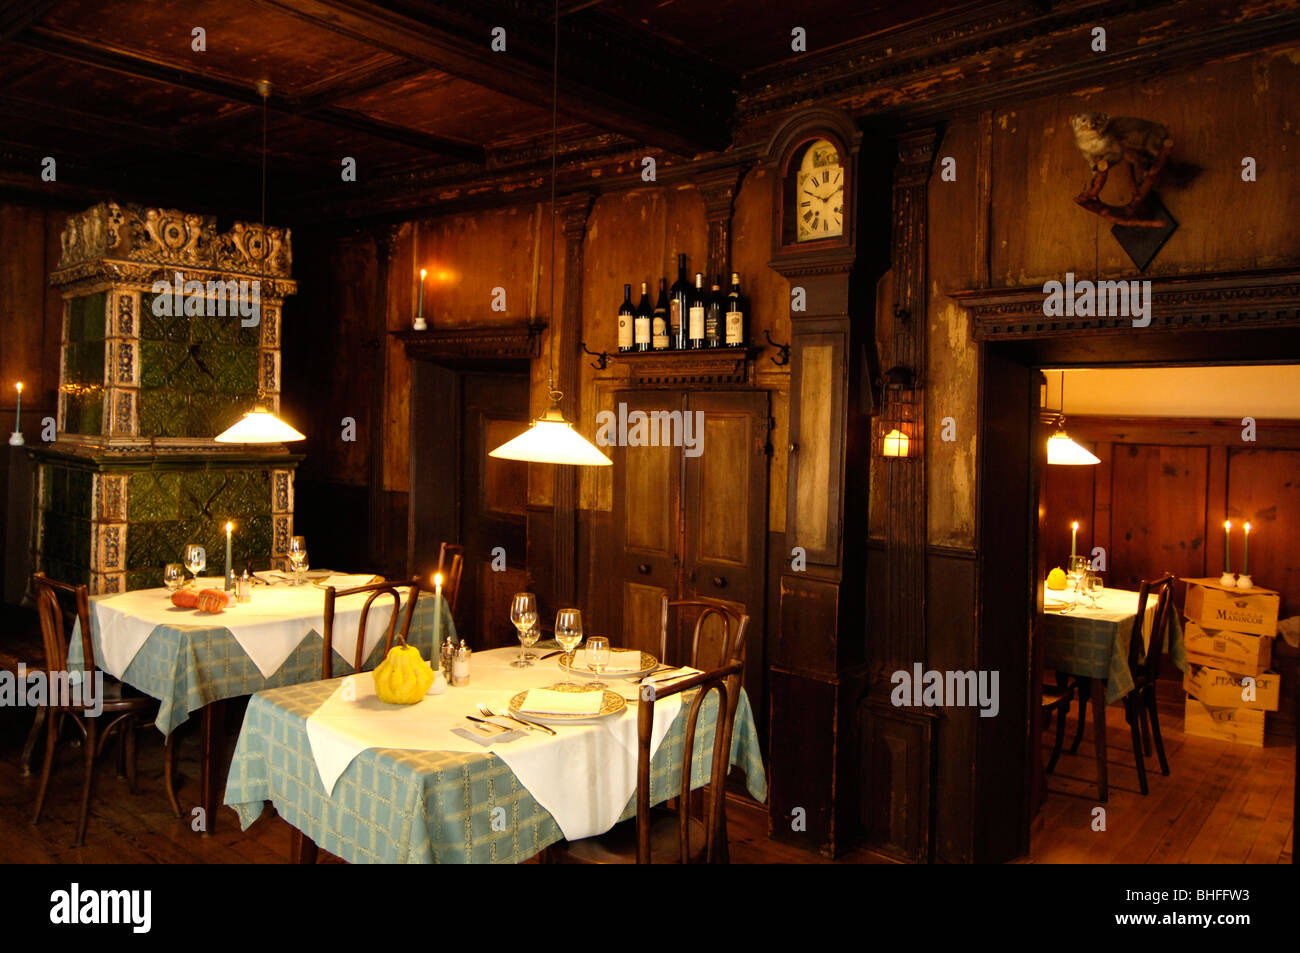 Innenansicht des Restaurants am Abend, Gasthaus Zur Rose, Kurtatsch,  Südtirol, Italien, Europa Stockfotografie - Alamy